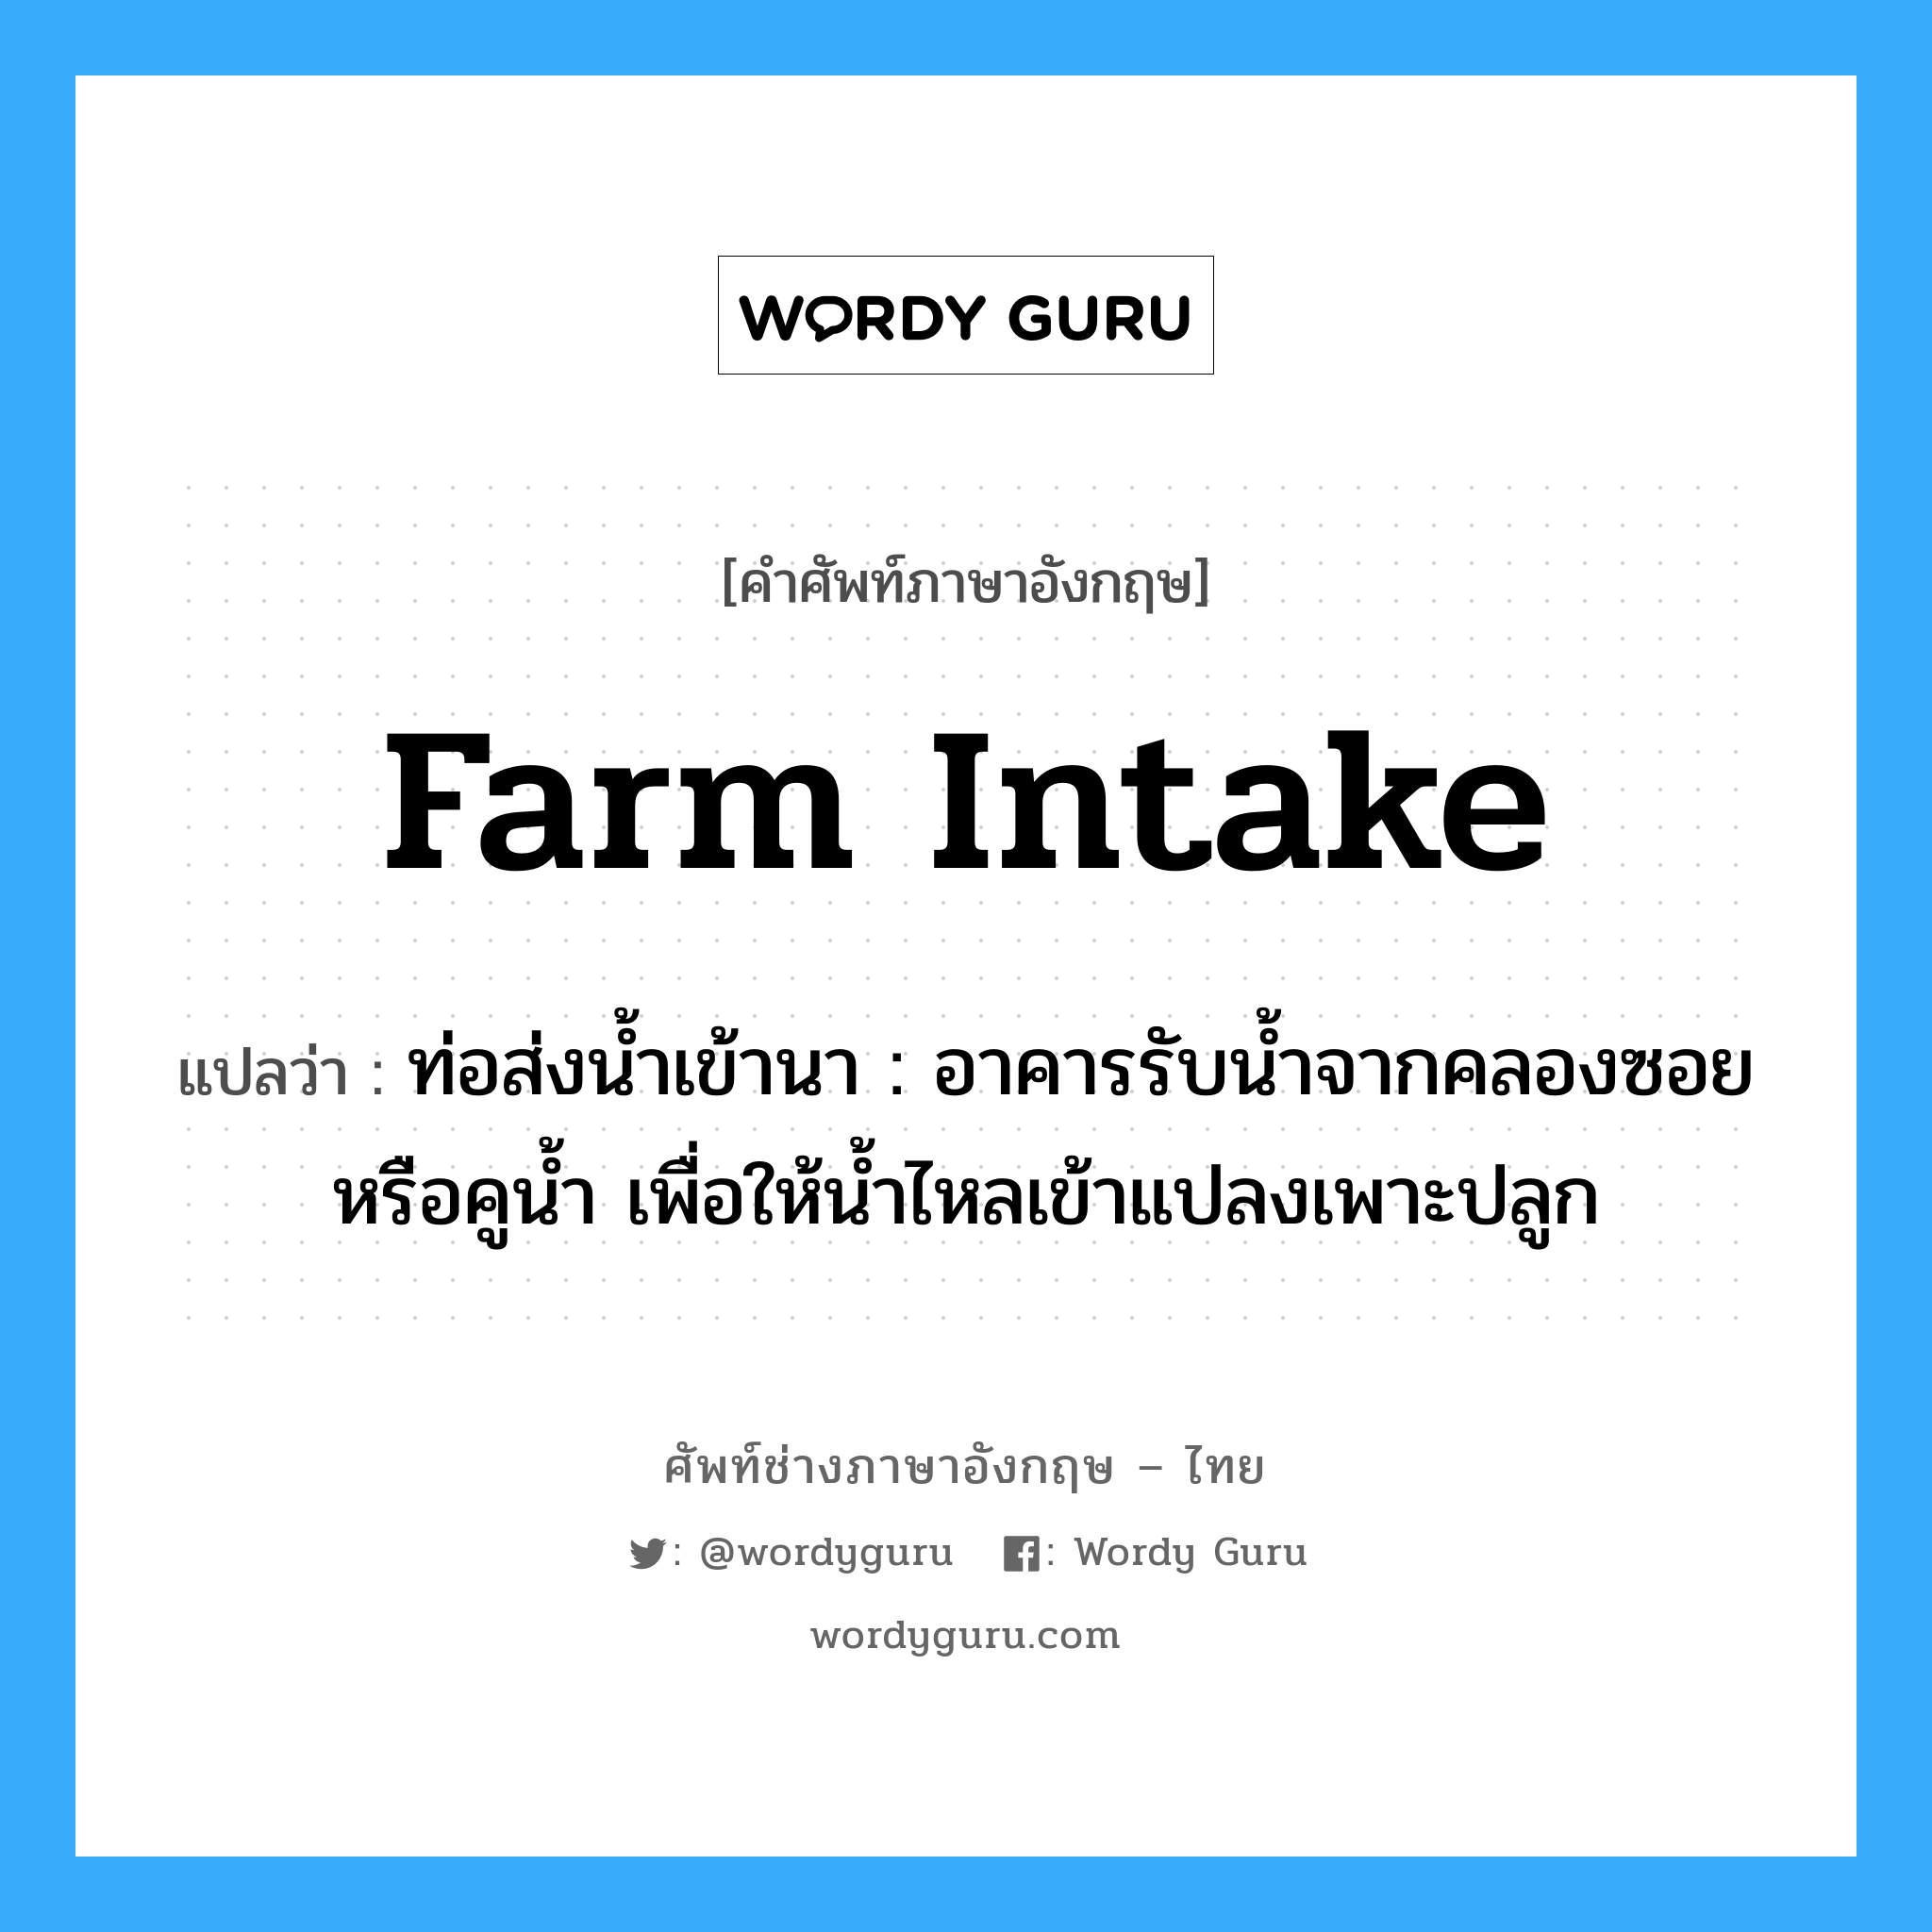 farm intake แปลว่า?, คำศัพท์ช่างภาษาอังกฤษ - ไทย farm intake คำศัพท์ภาษาอังกฤษ farm intake แปลว่า ท่อส่งน้ำเข้านา : อาคารรับน้ำจากคลองซอยหรือคูน้ำ เพื่อให้น้ำไหลเข้าแปลงเพาะปลูก